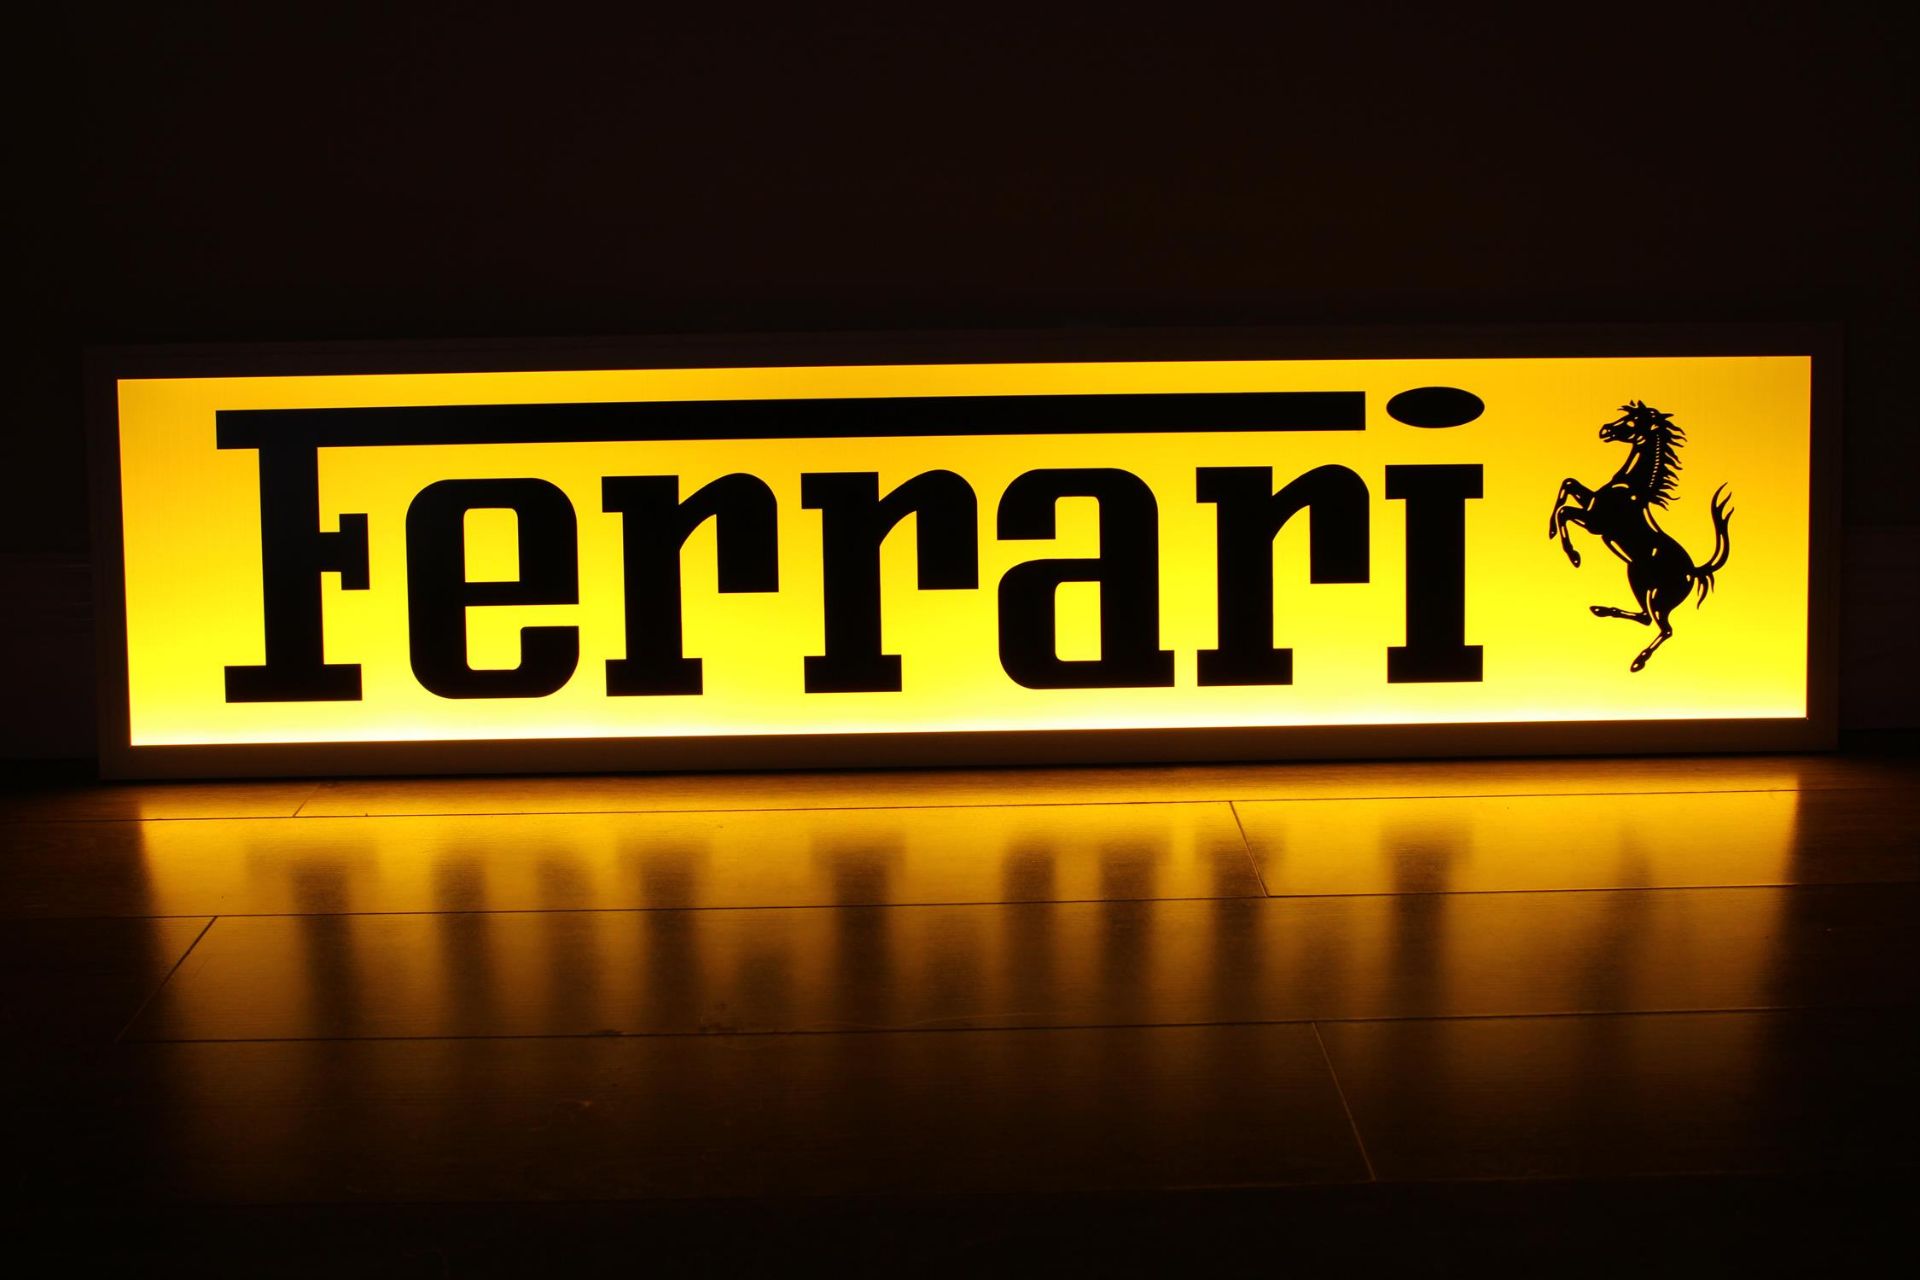 Ferrari Style Illuminated Sign